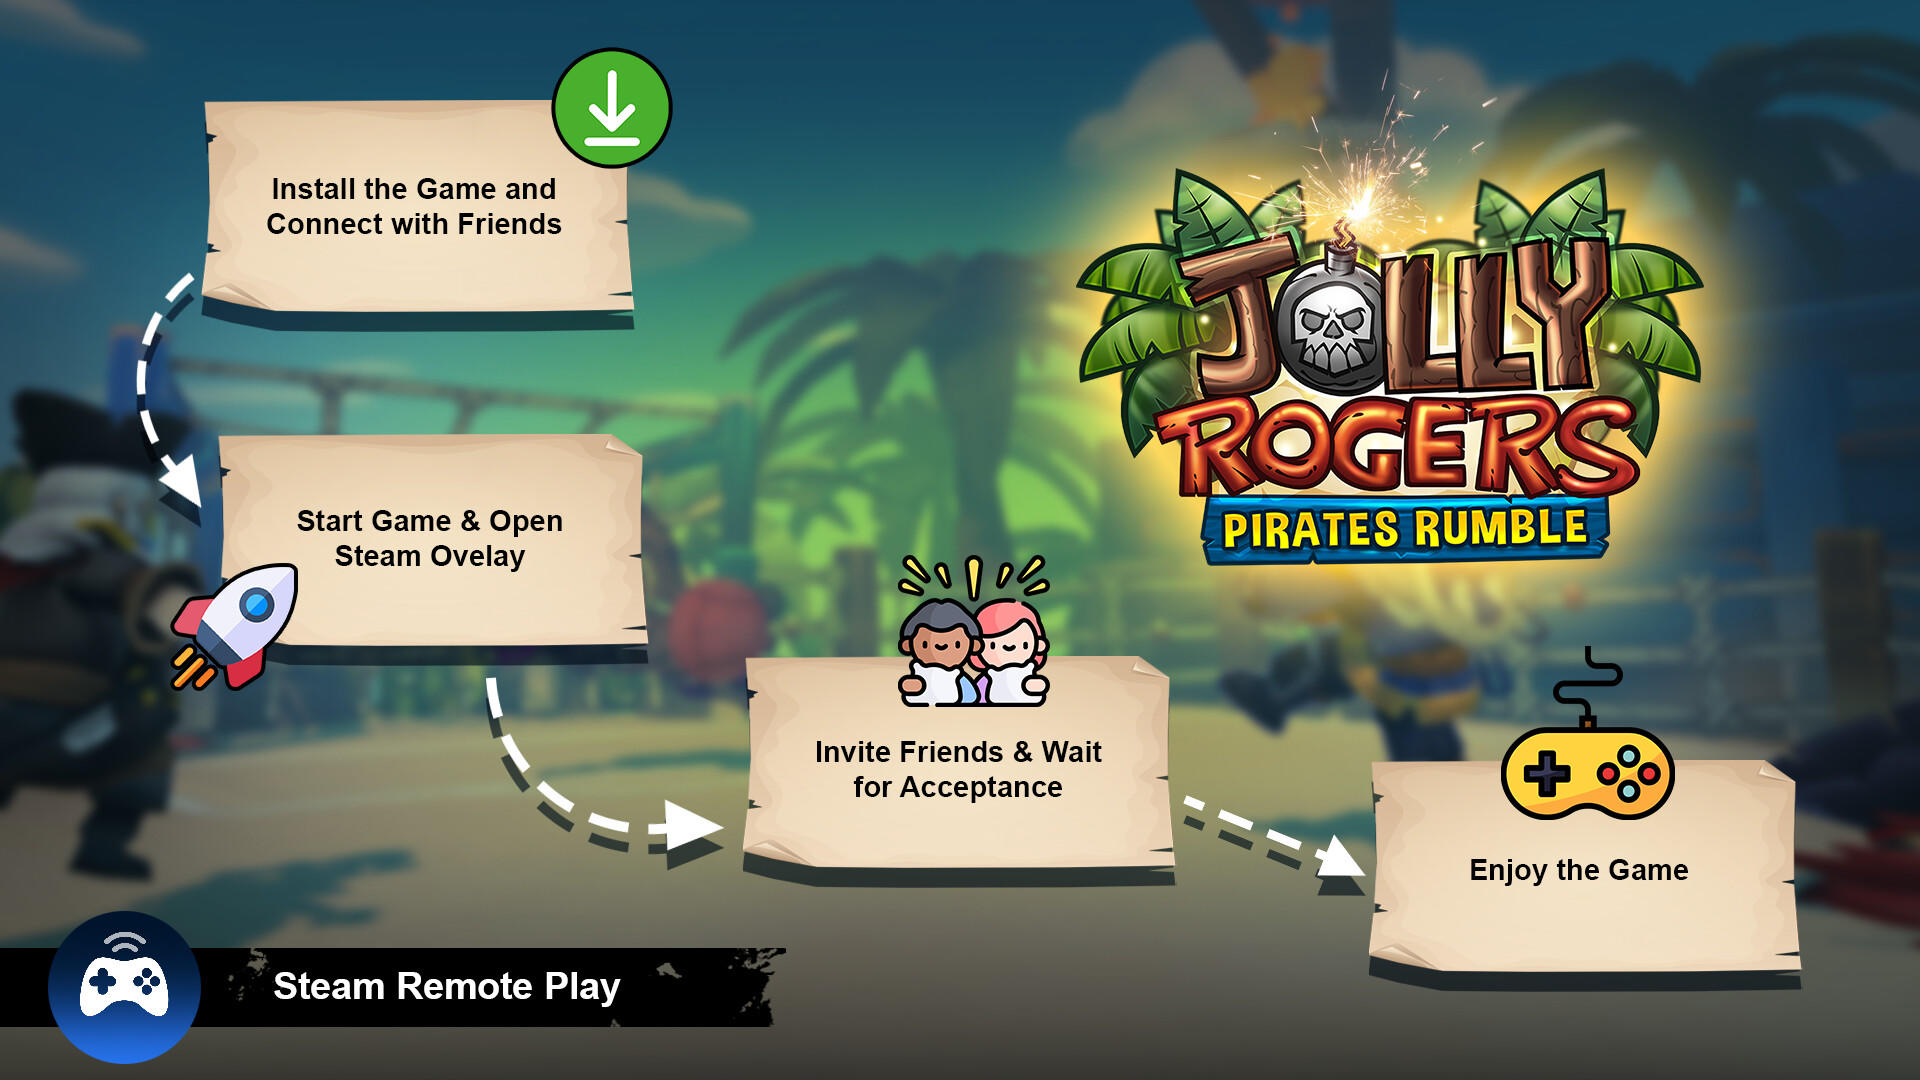 Screenshot 1 of Jolly Rogers Piratas Rumble 